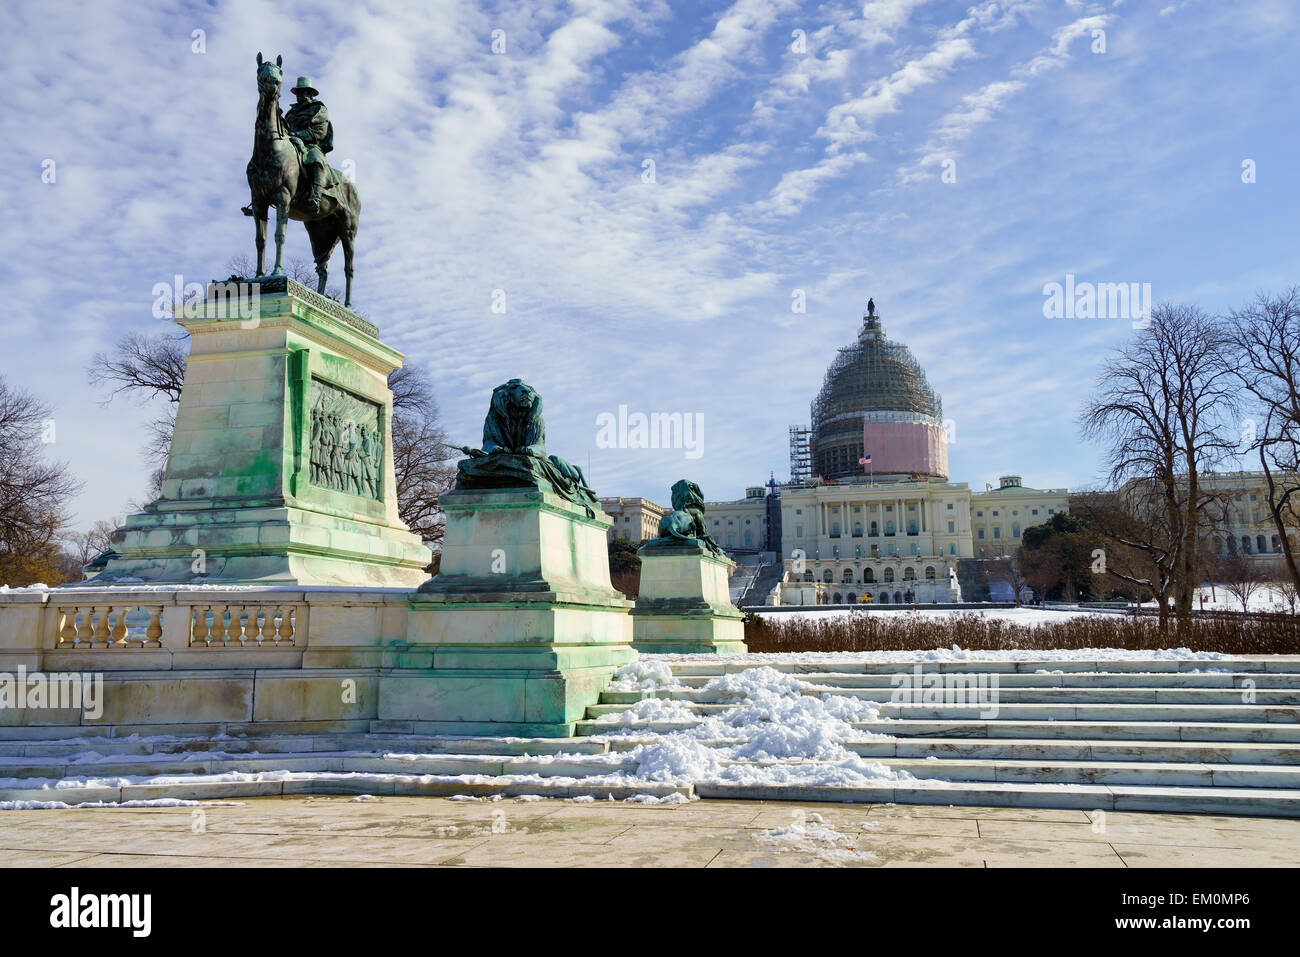 El Capitolio y el monumento conmemorativo de la guerra civil Grant estatua en Washington DC, Estados Unidos. Foto de stock